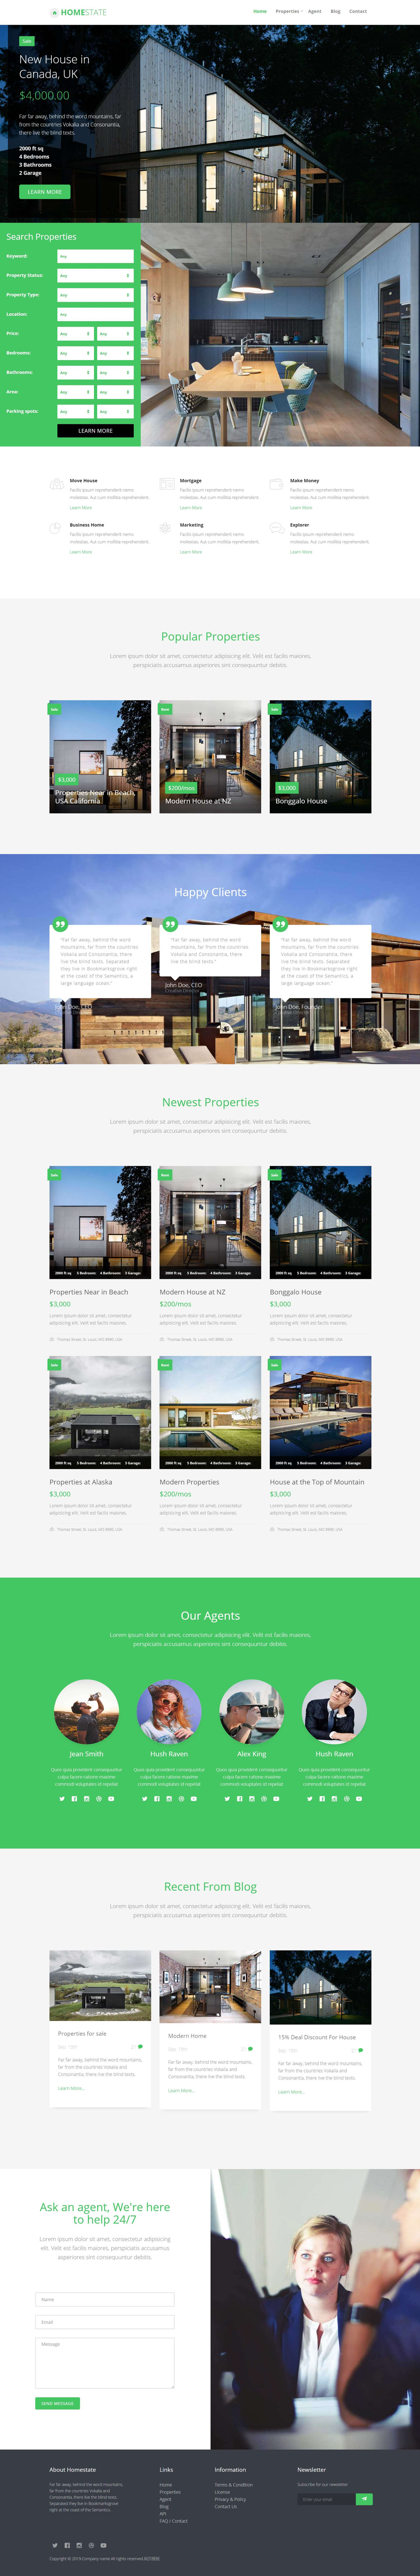 html绿色宽屏形式国外房屋出售网页模板代码